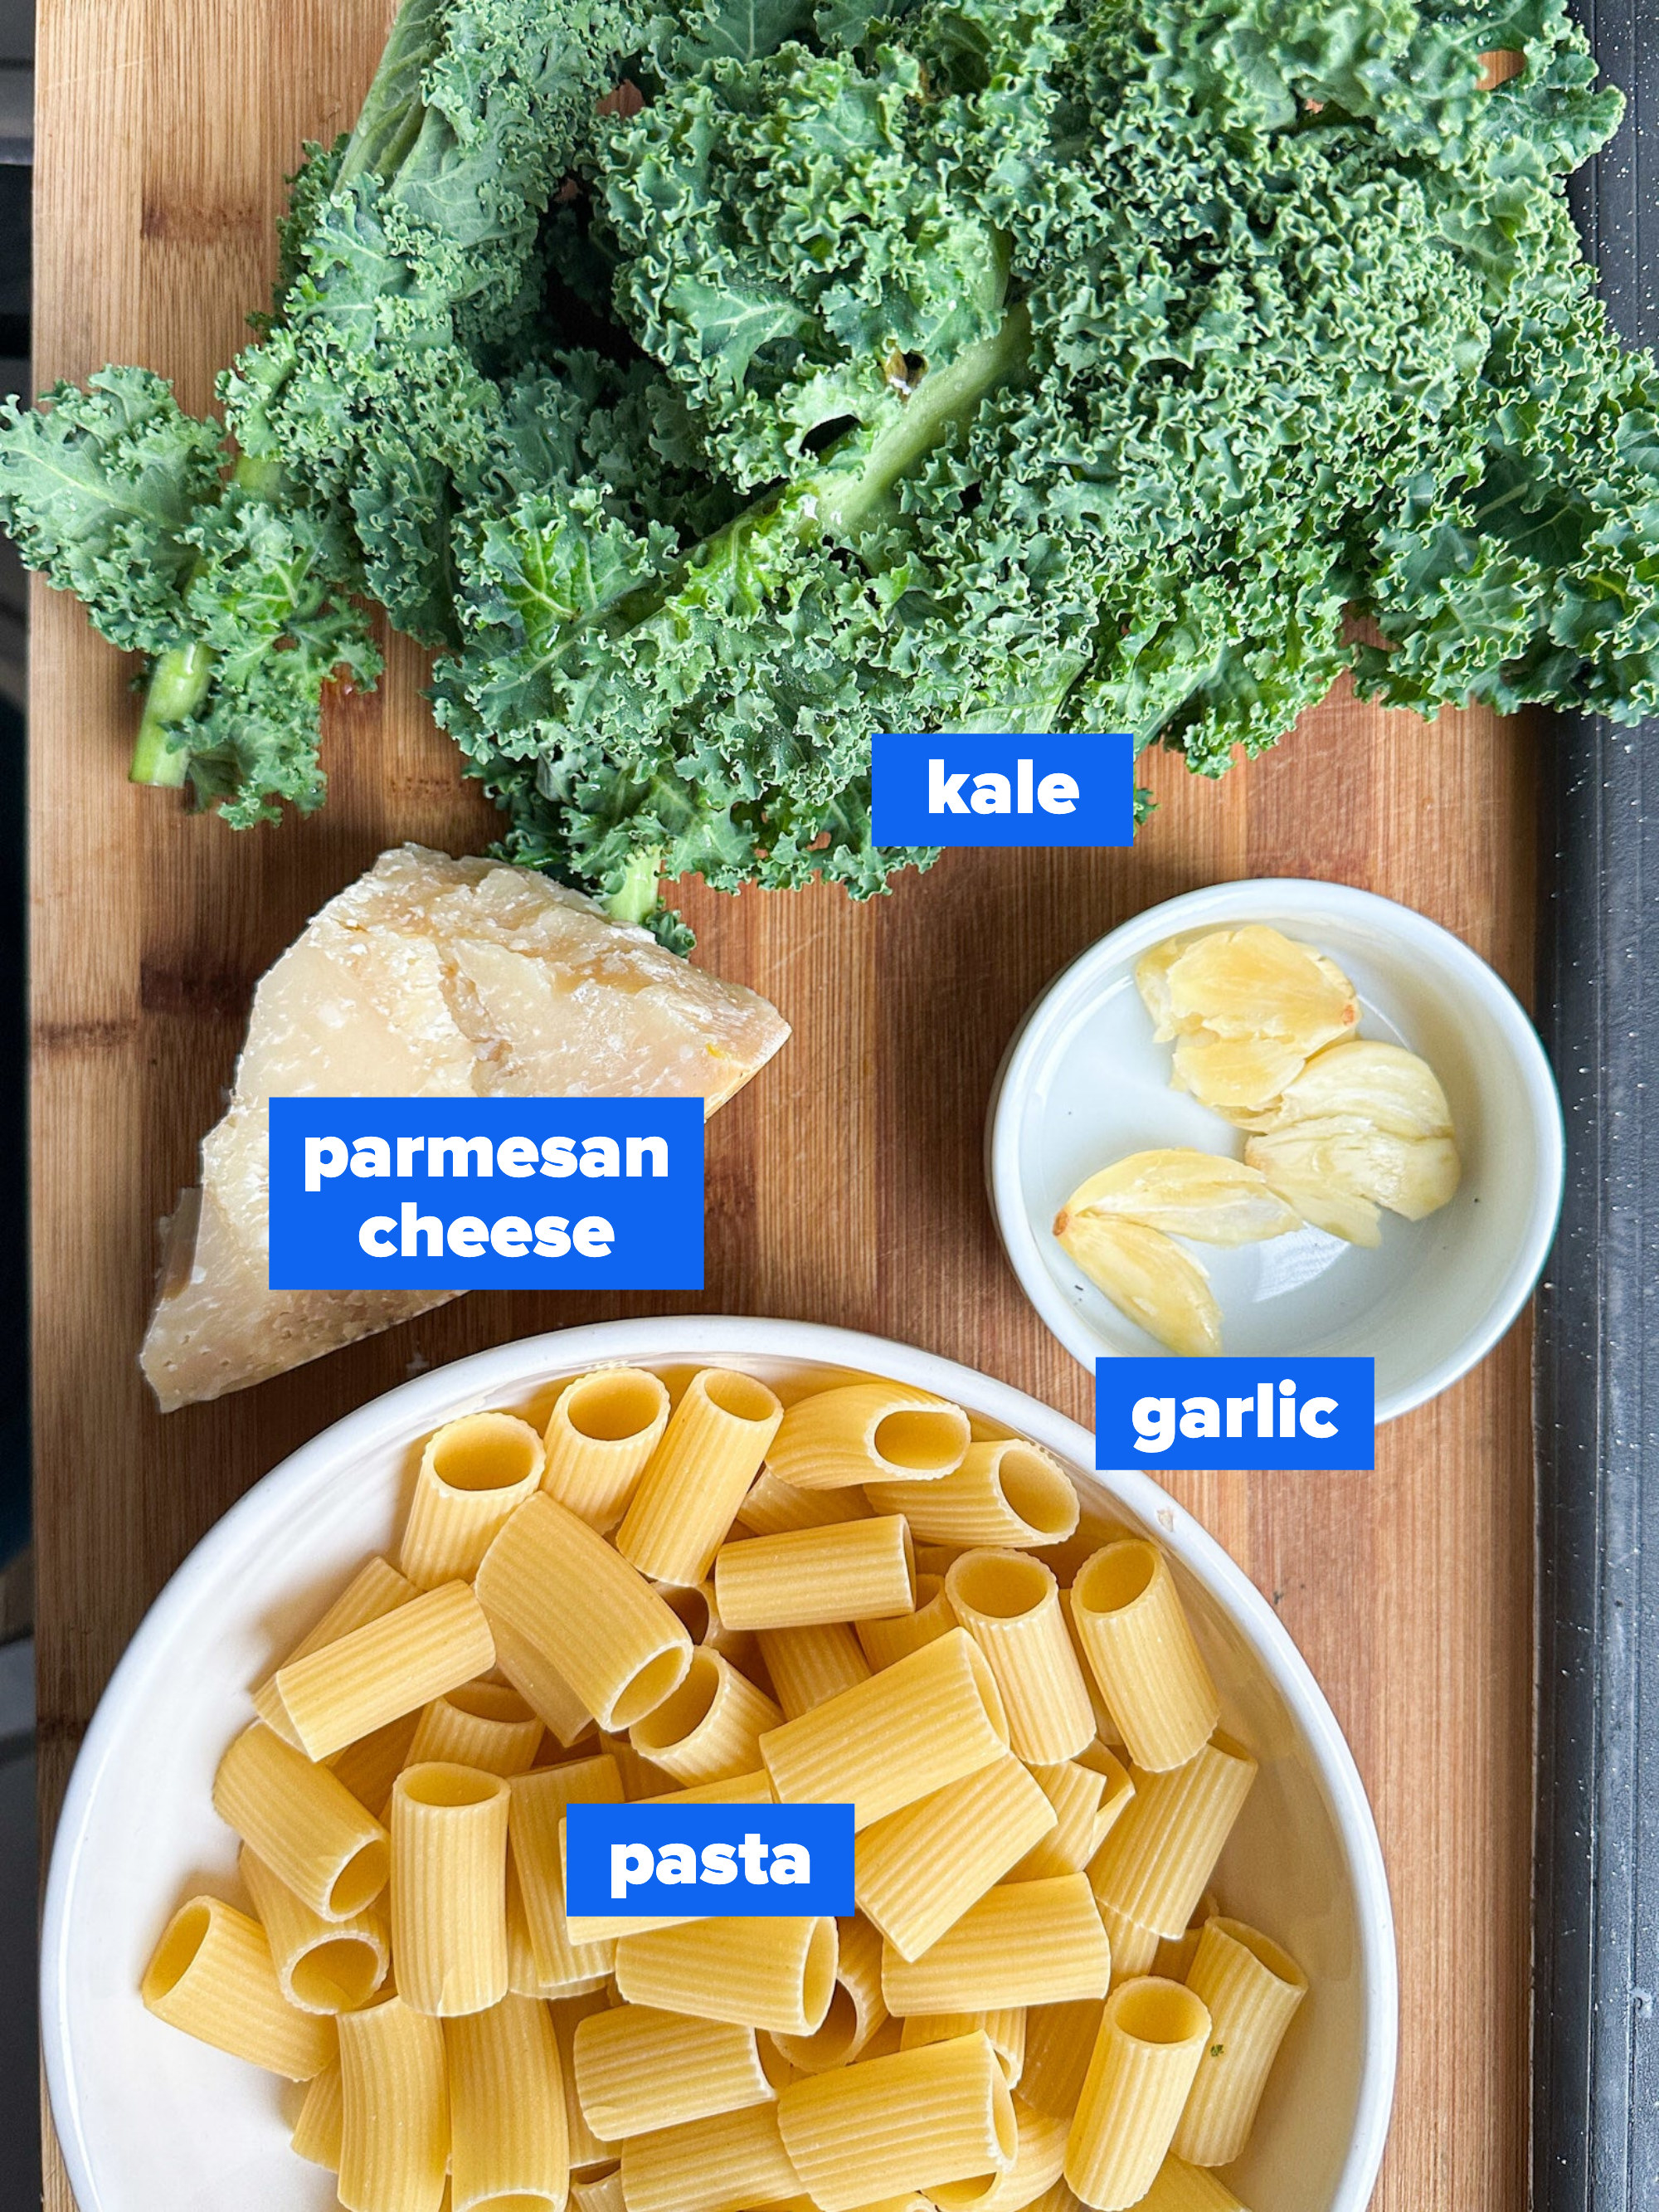 the ingredients: kale, parmesan cheese, garlic, pasta